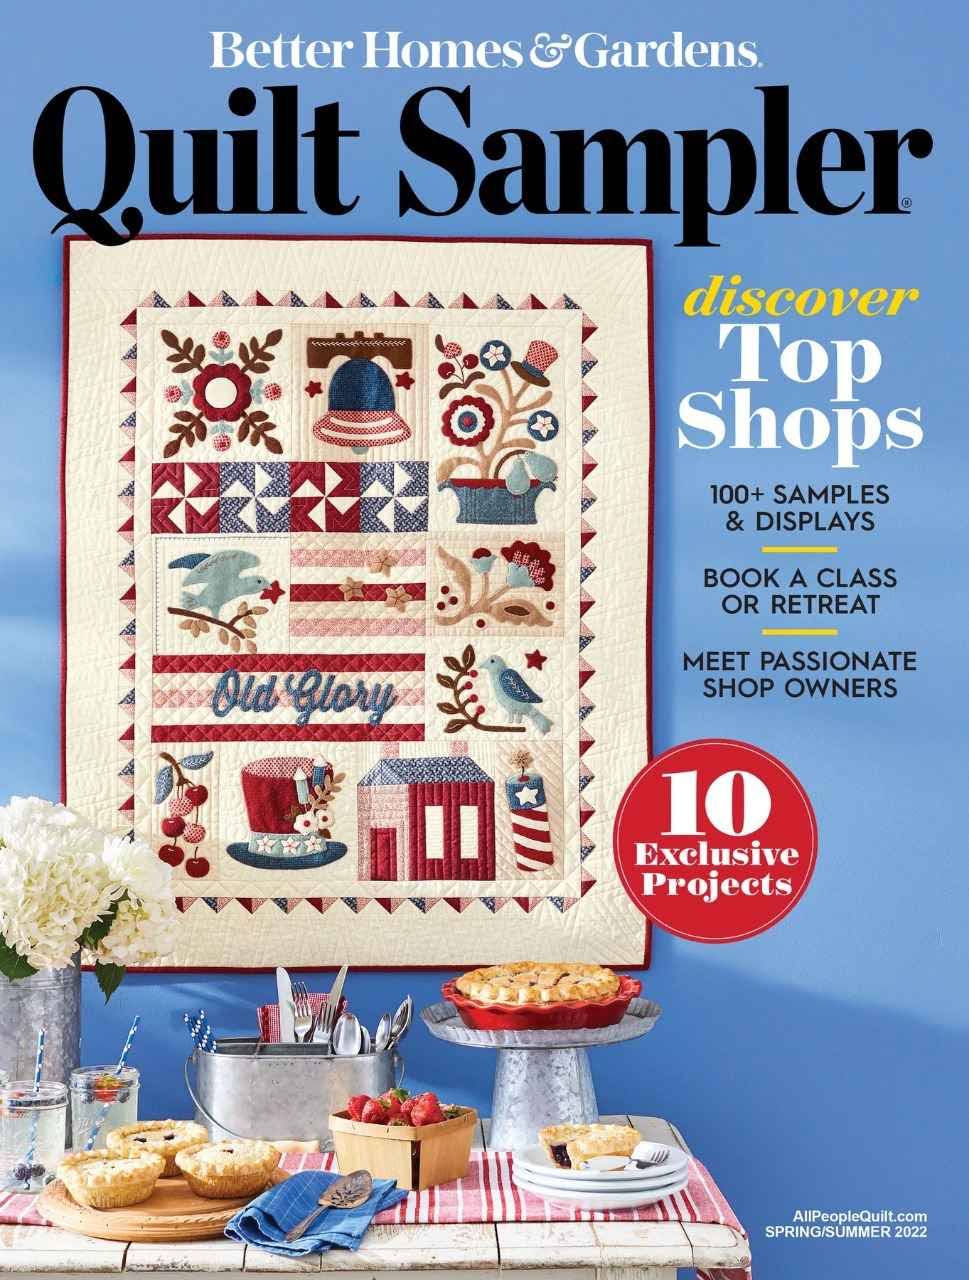 Better Homes & Gardens Magazine - Quilt Sampler, Issue-23